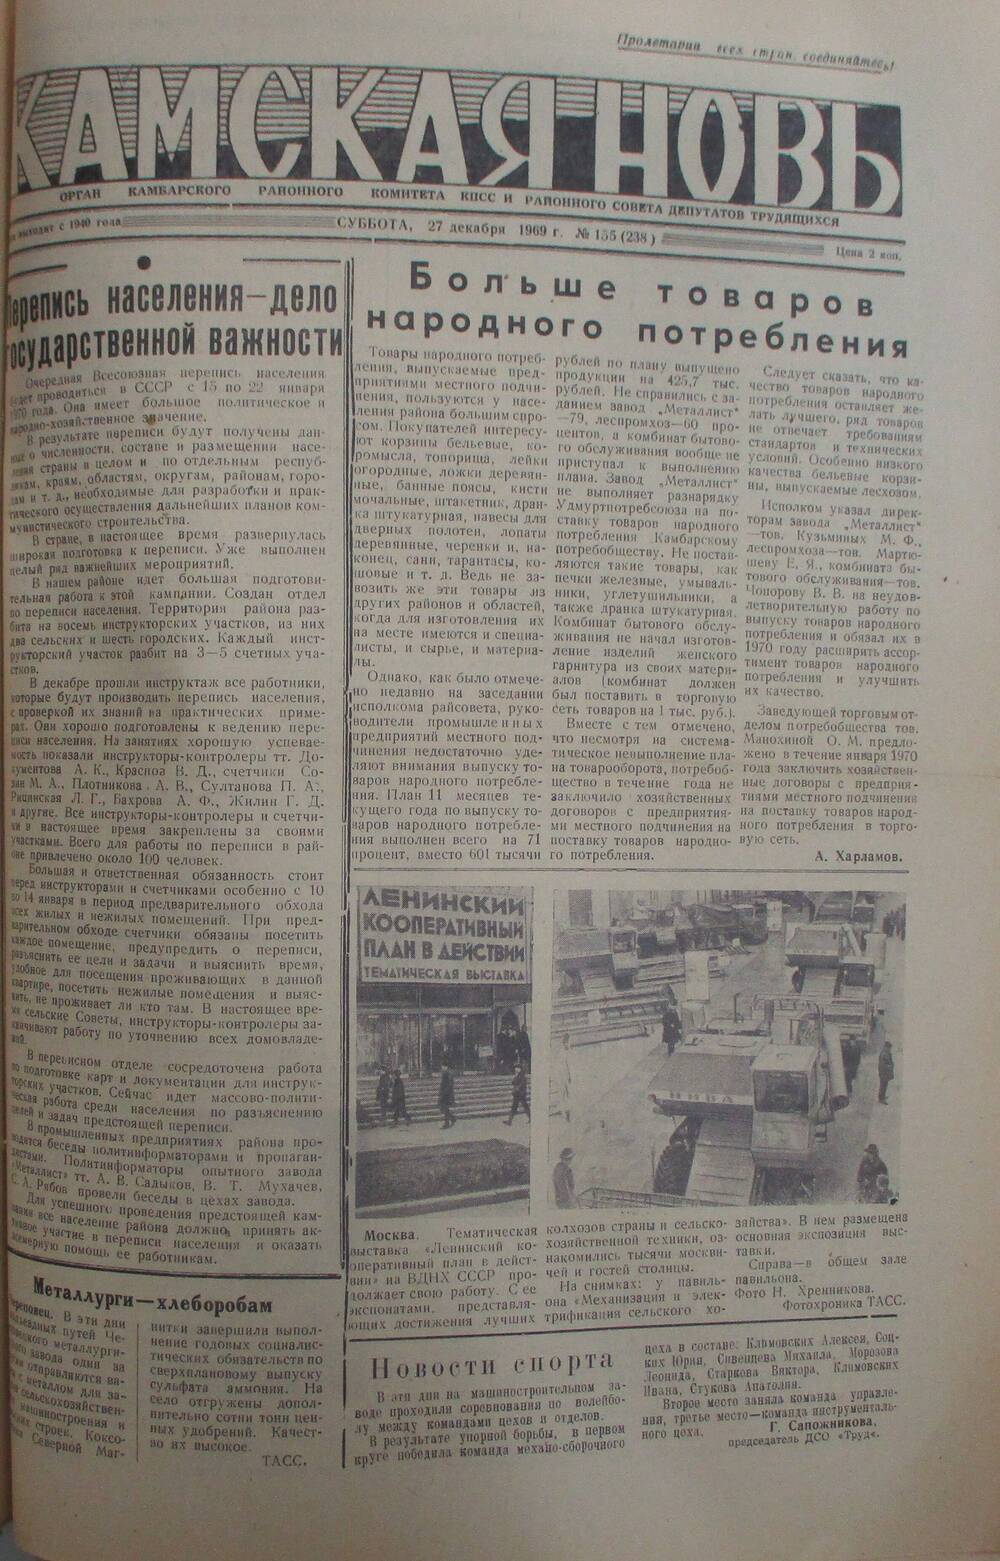 Газеты Камская новь за 1969 год, орган Камбарского райсовета и  РККПСС, с №1 по №66, с №68 по №156. №155.